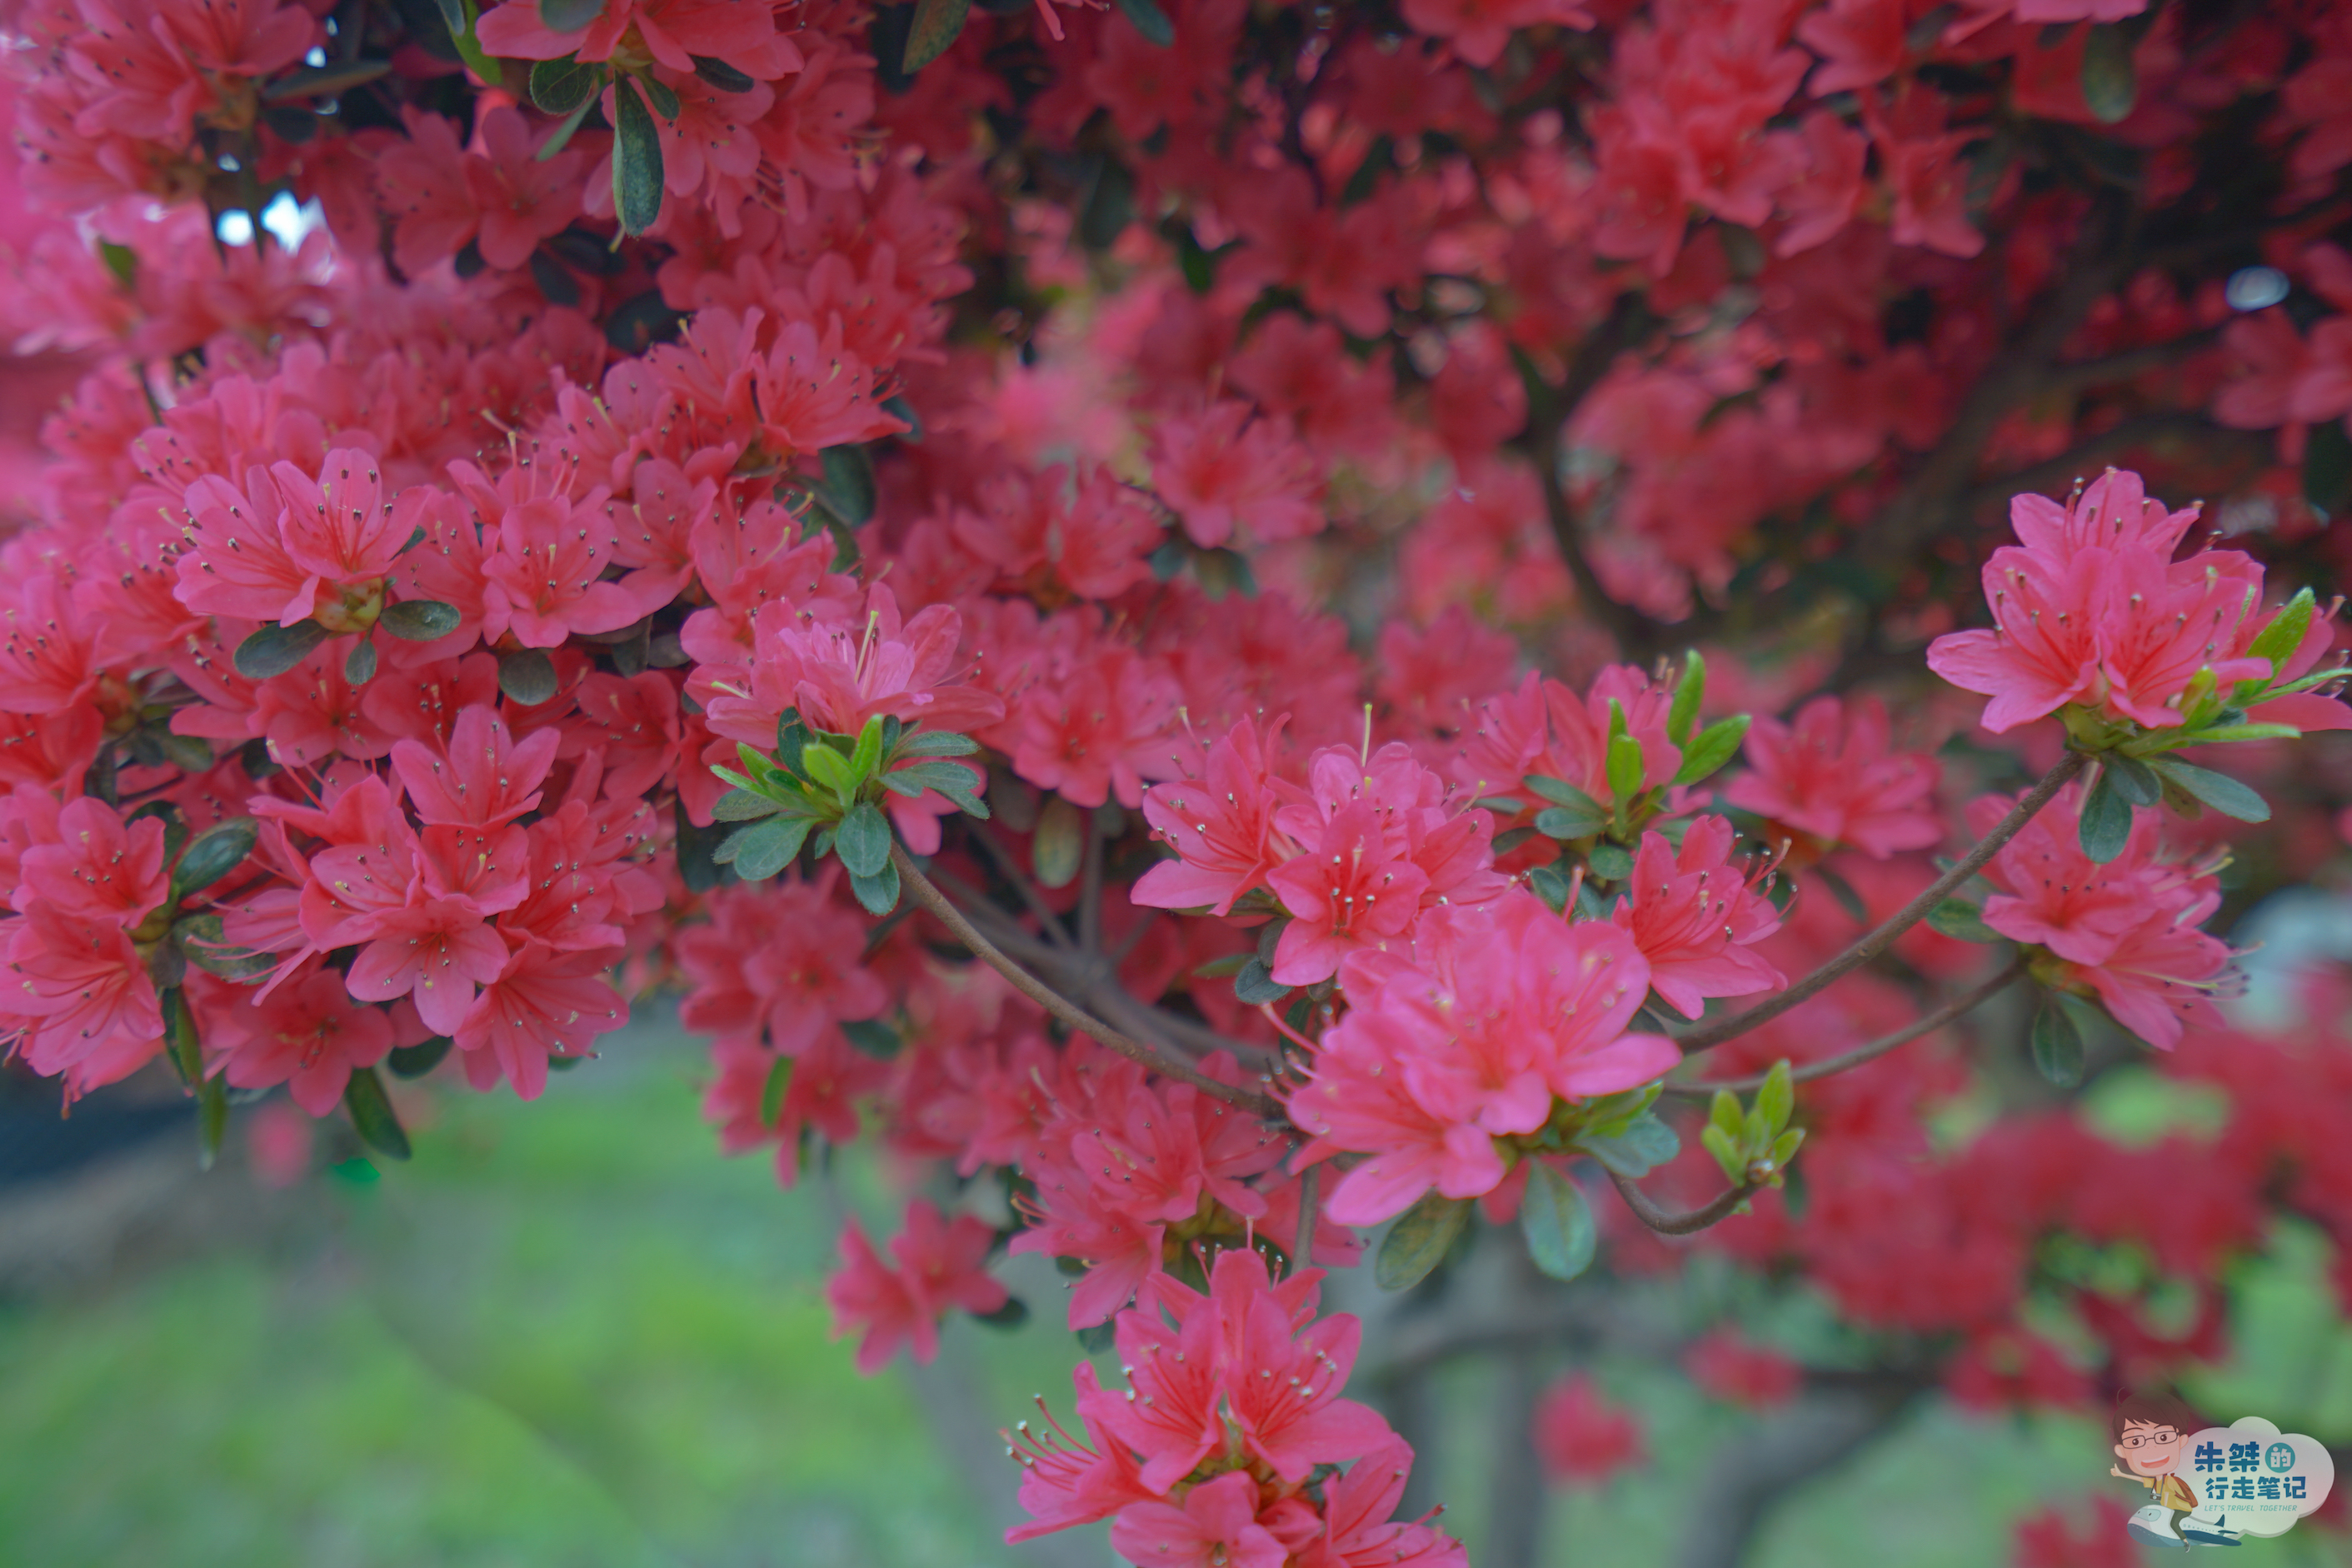 中国精品杜鹃藏品最多的花园,500年杜鹃花王花开时